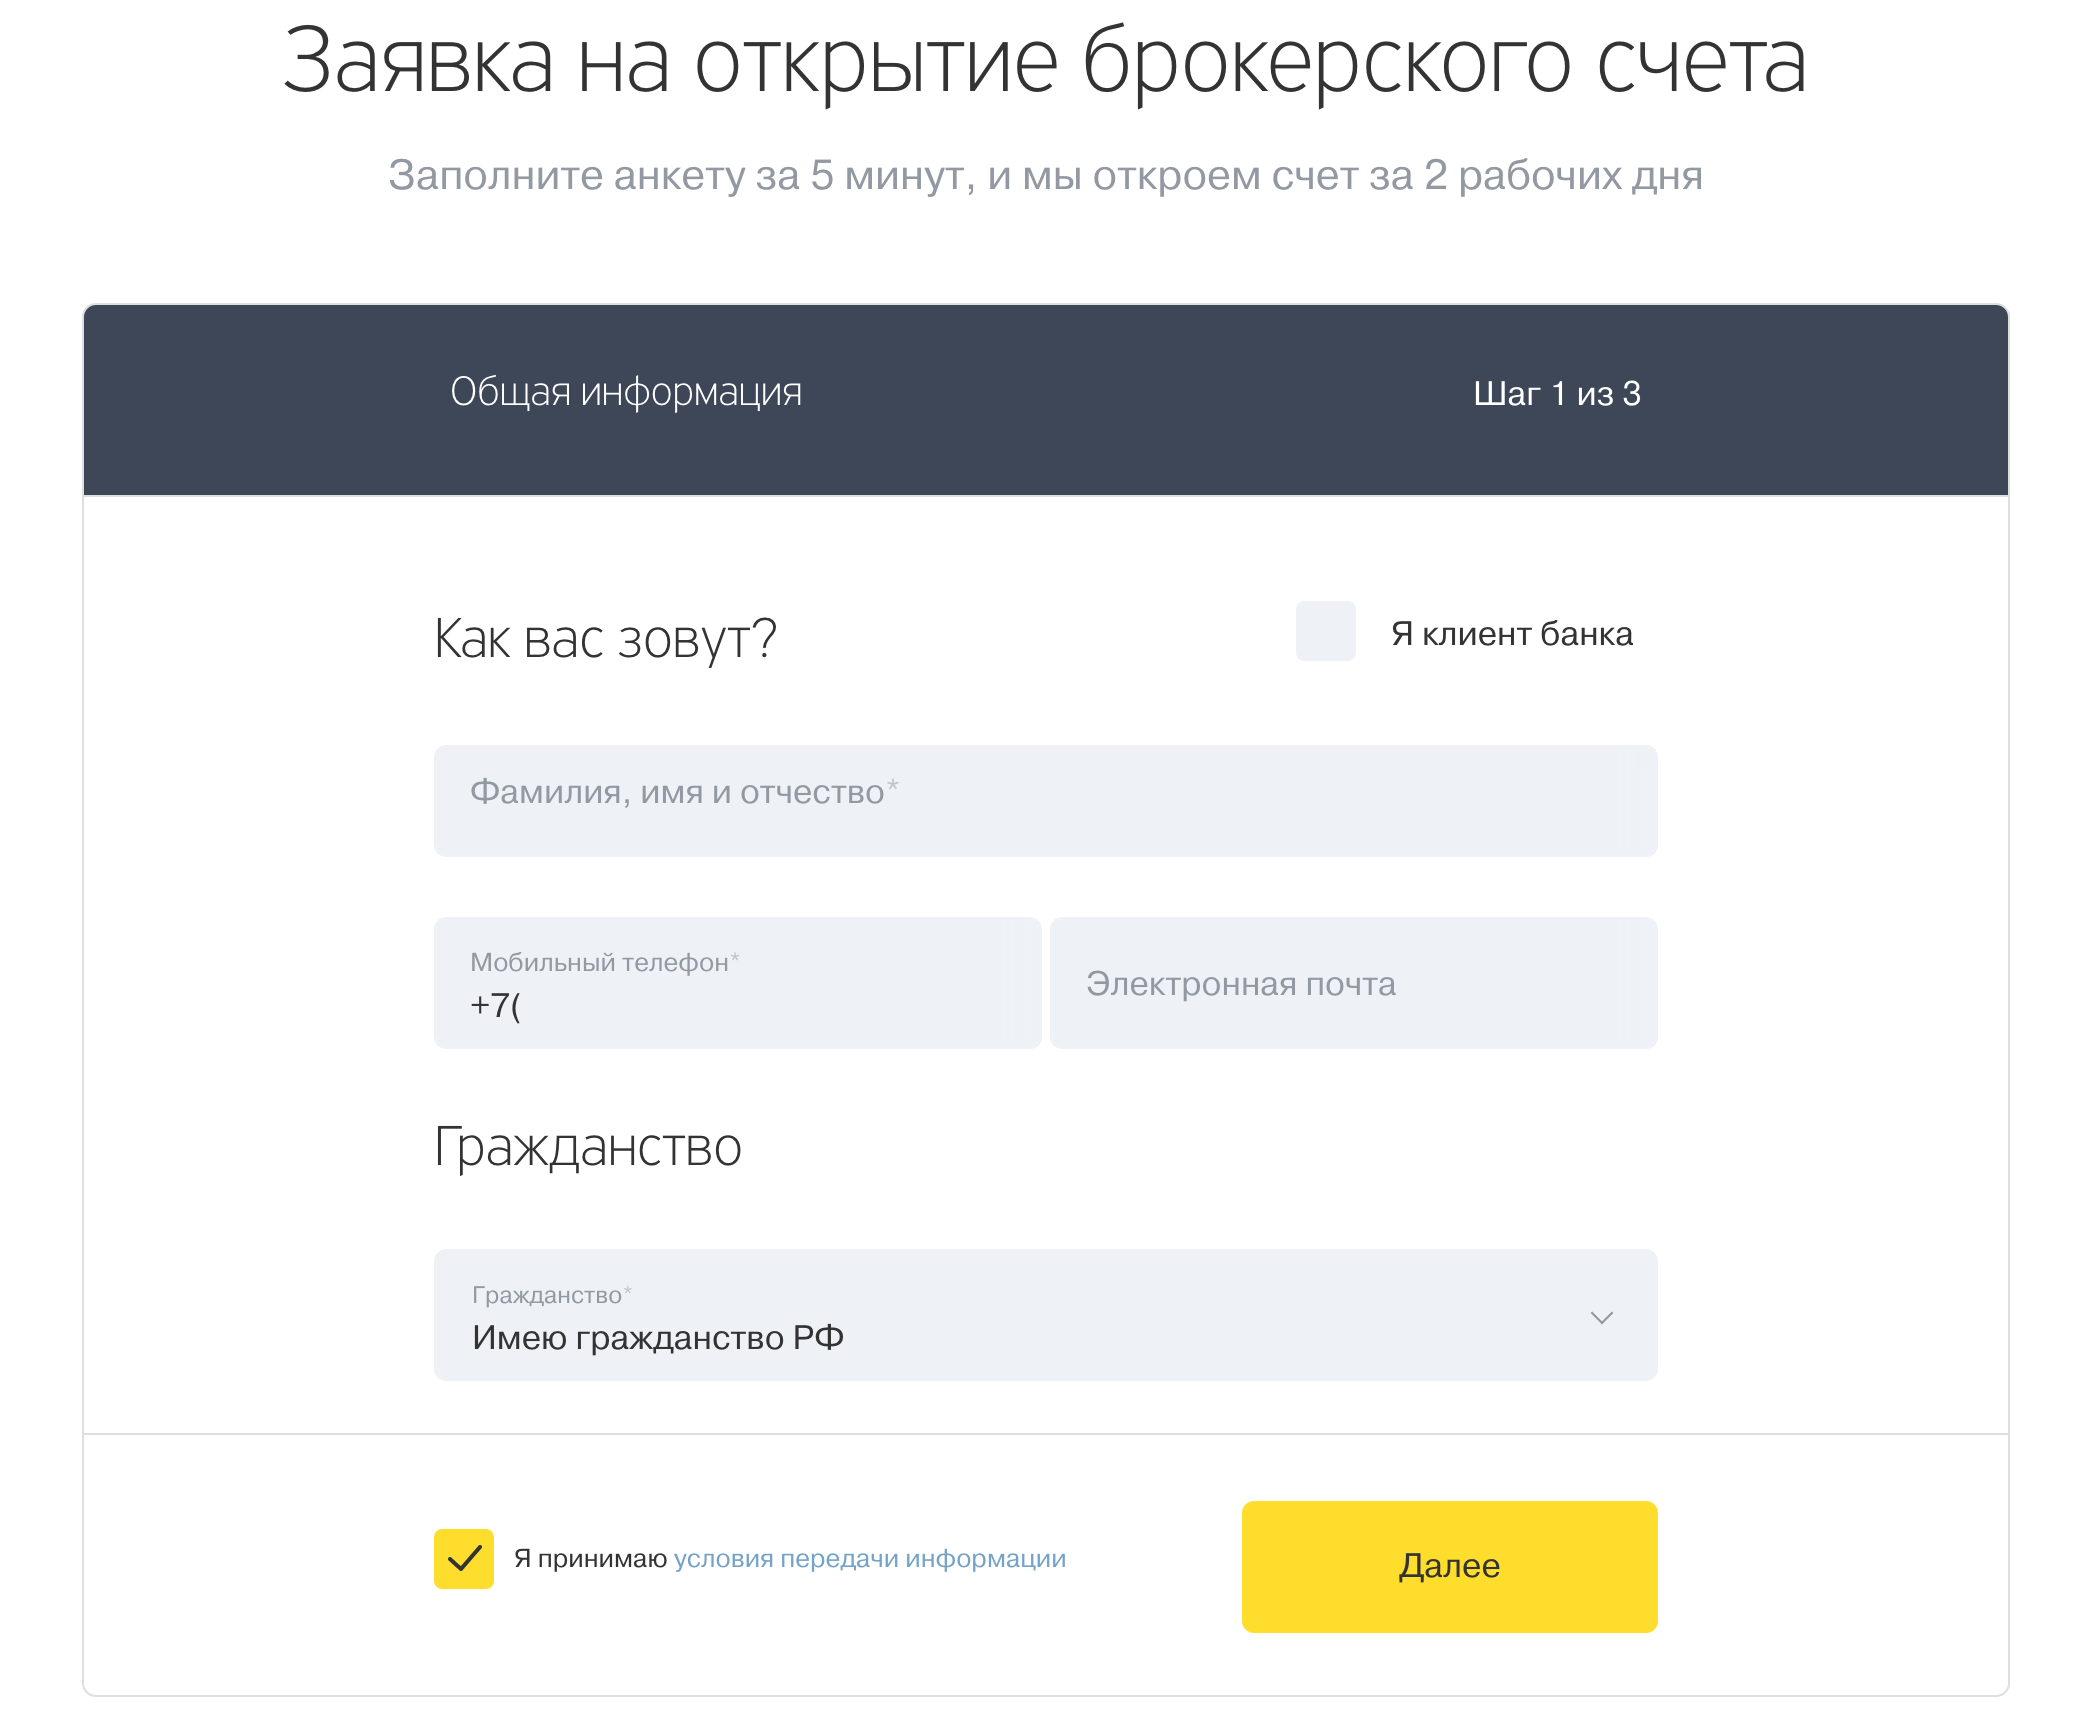 Как купить акции Яндекс частному лицу - самый простой способ